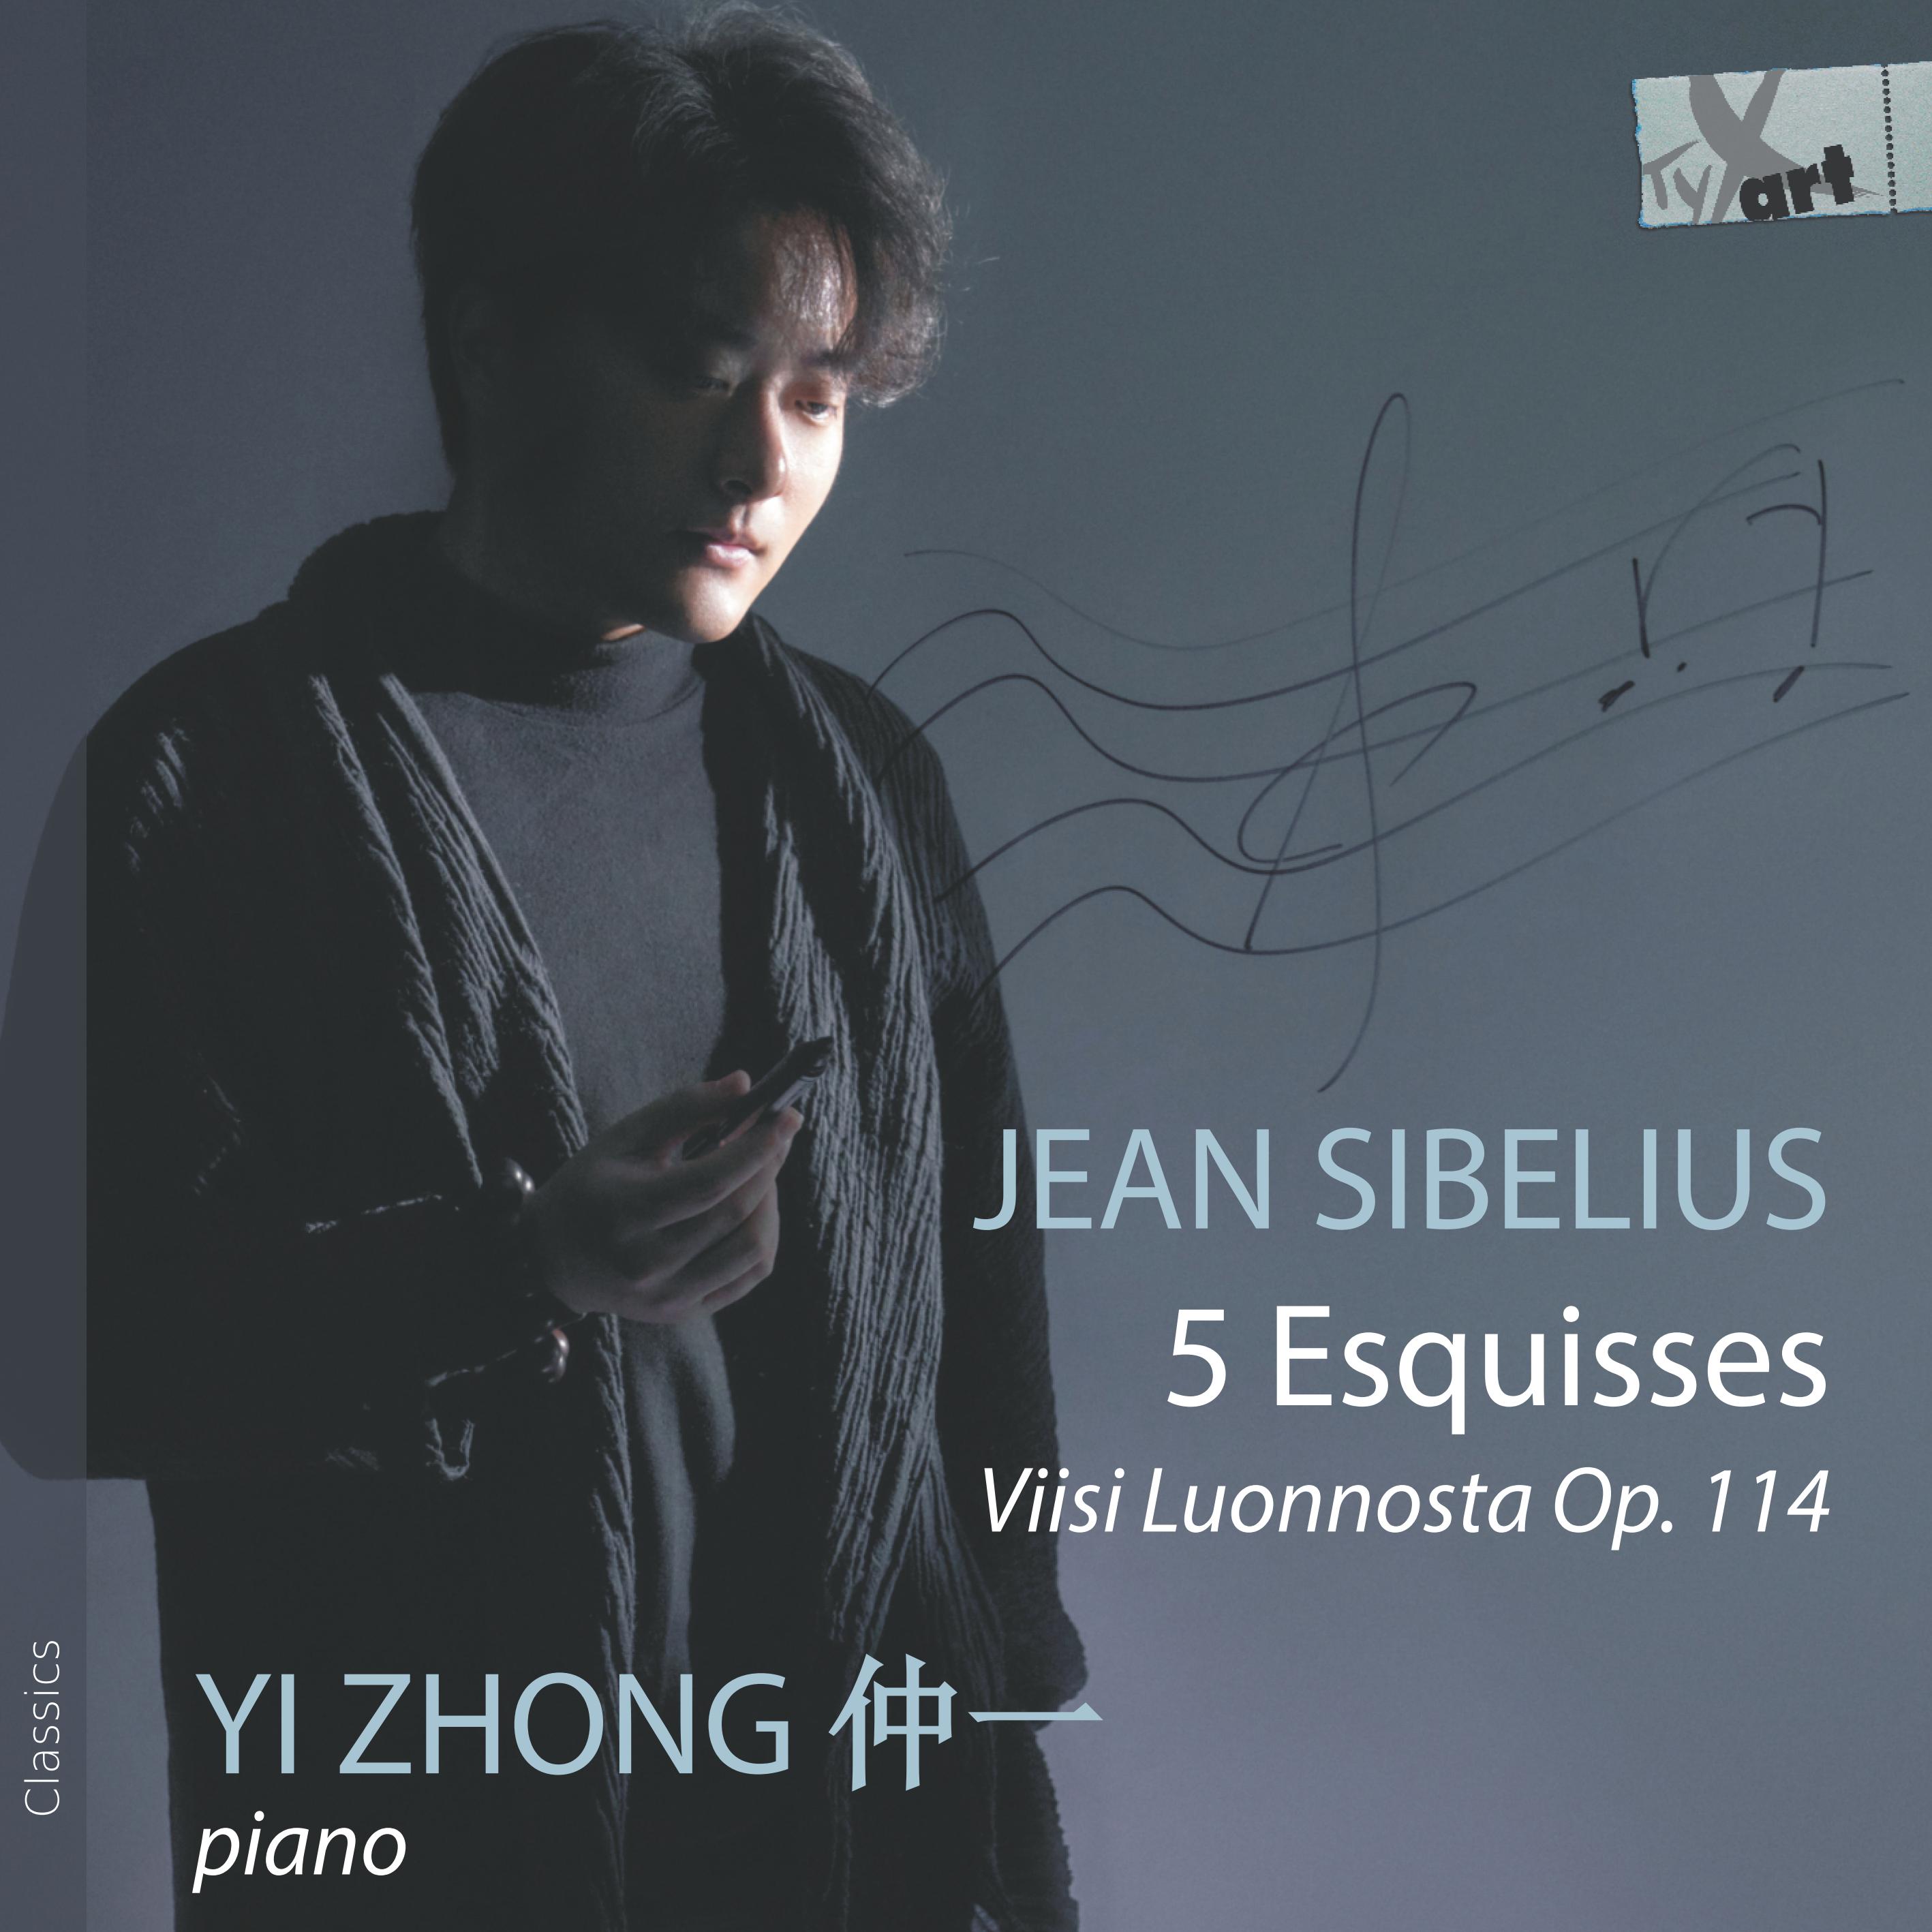 Jean Sibelius: 5 Esquisses, op. 114 - Yi Zhong, Klavier